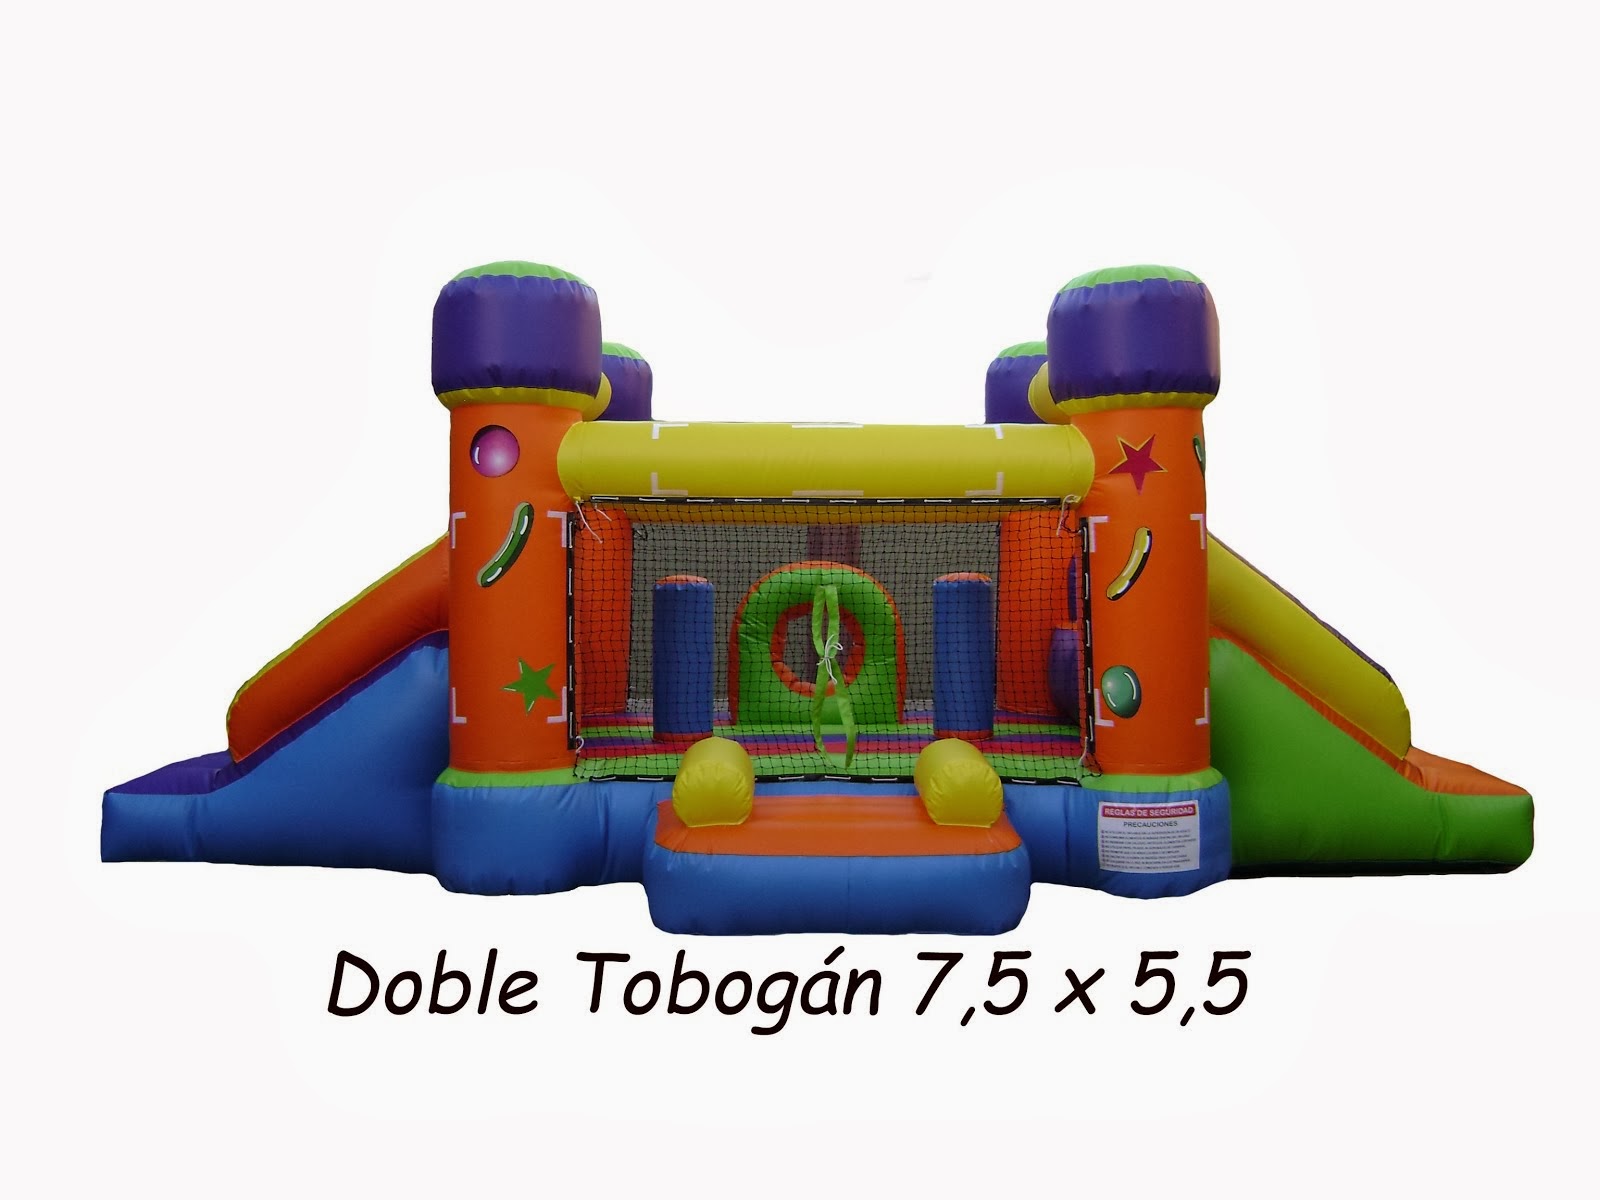 DOBLE TOBOGAN 7,5 x 4,5